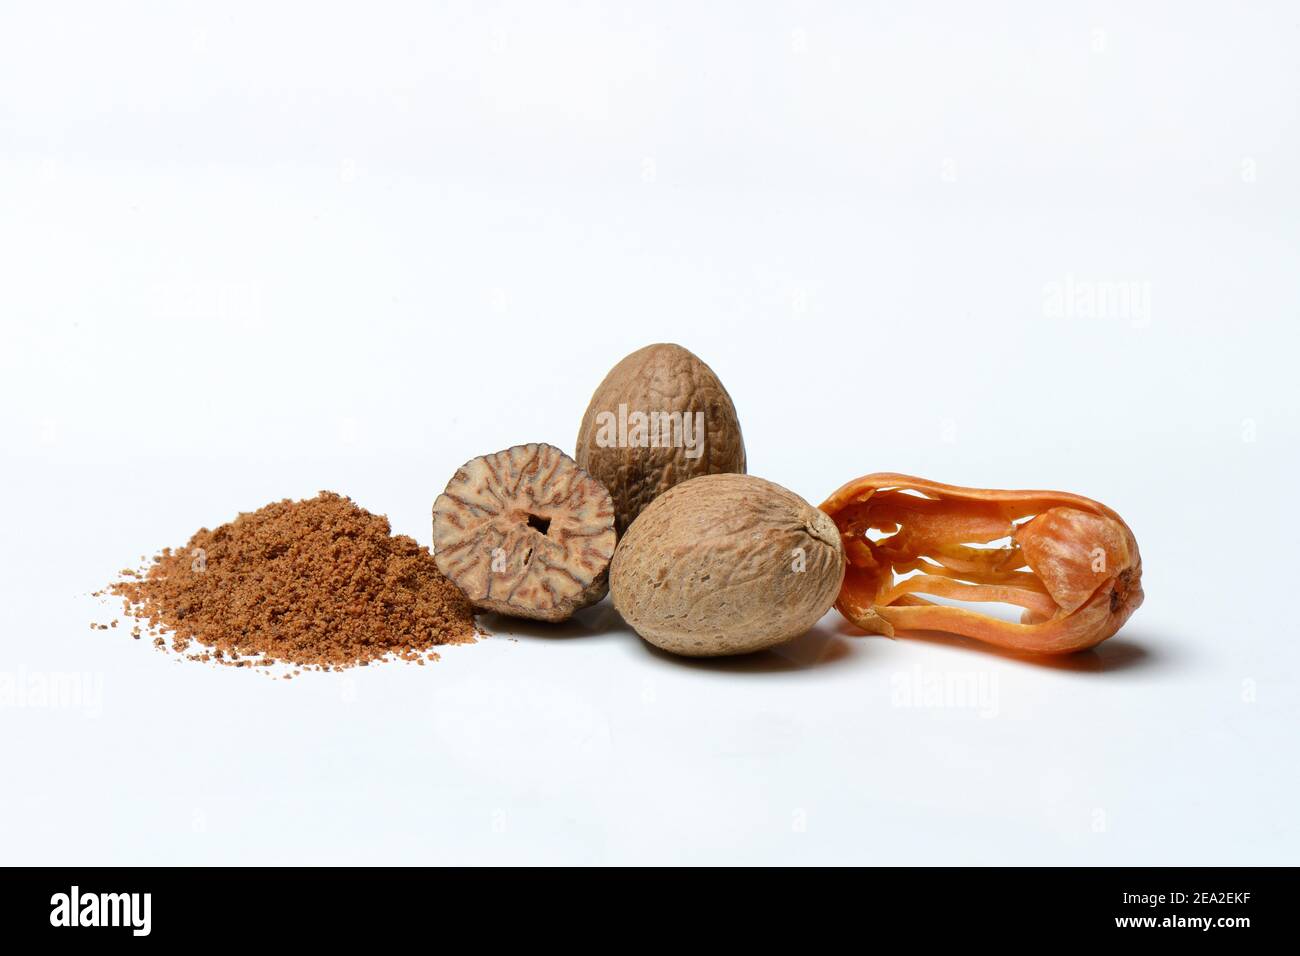 Nutmegs, ground nutmeg powder and mace Stock Photo